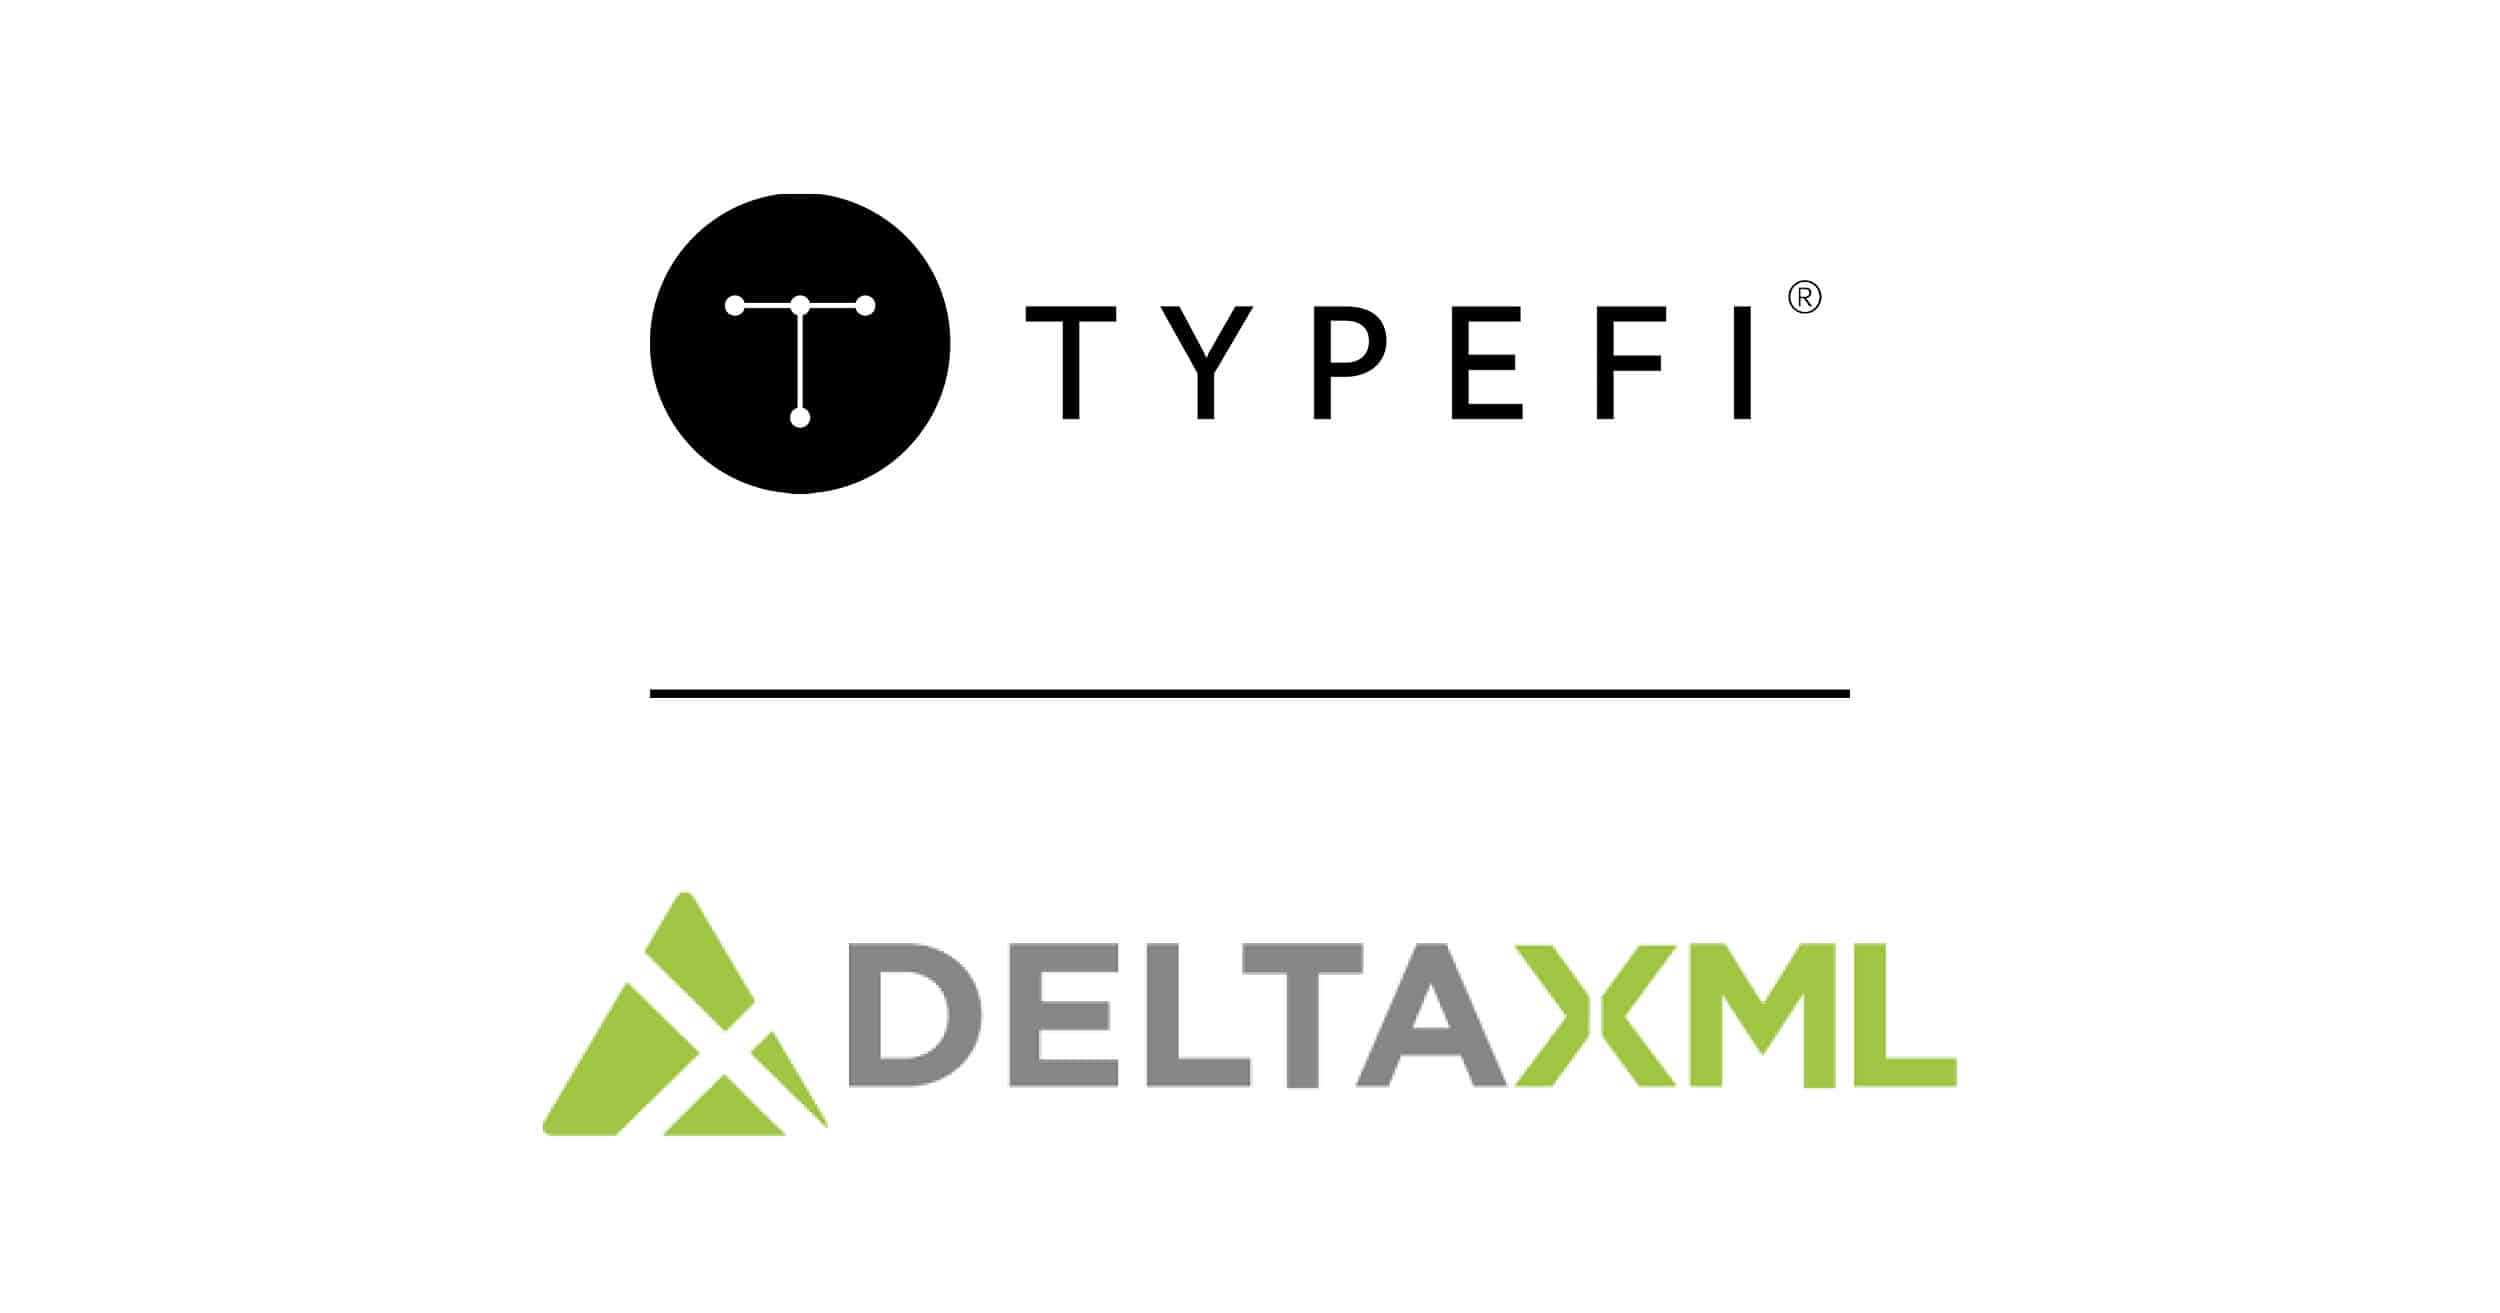 Typefi logo above the DeltaXML logo